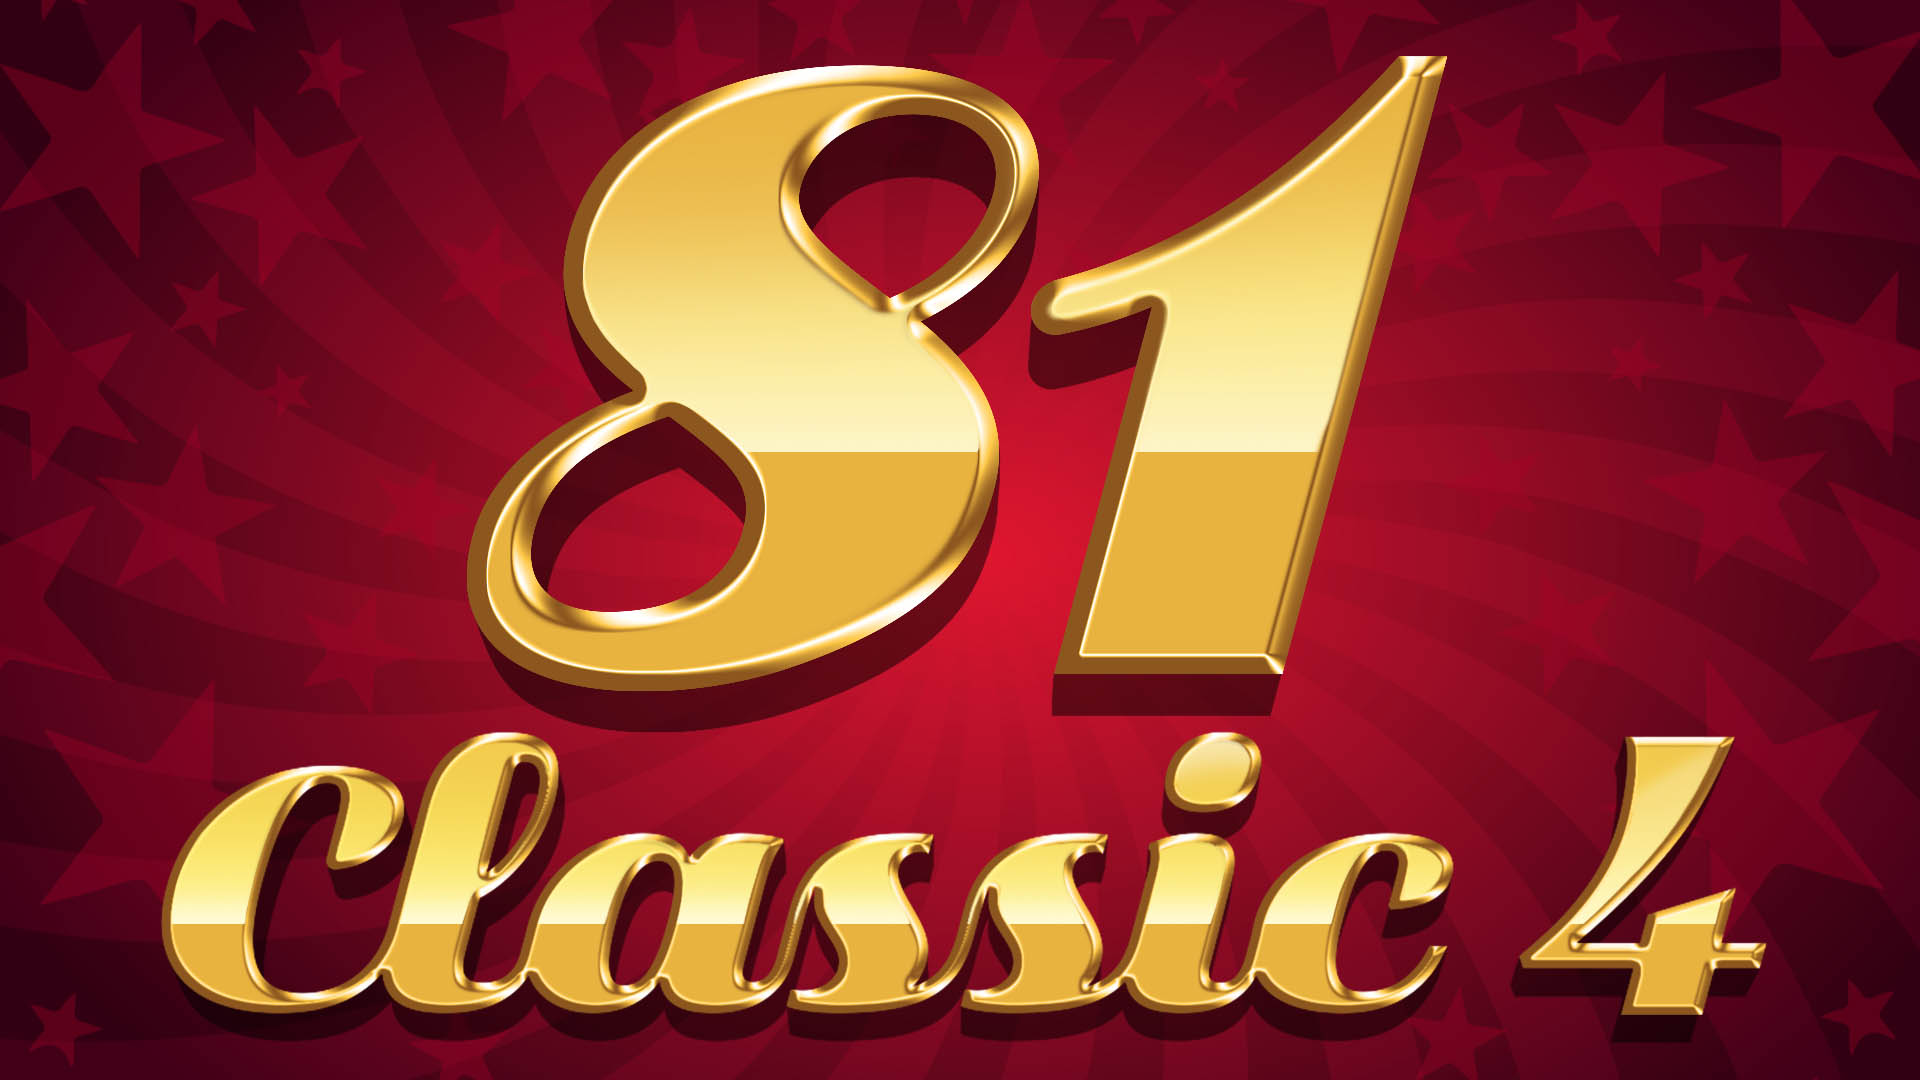 81 Classic 4